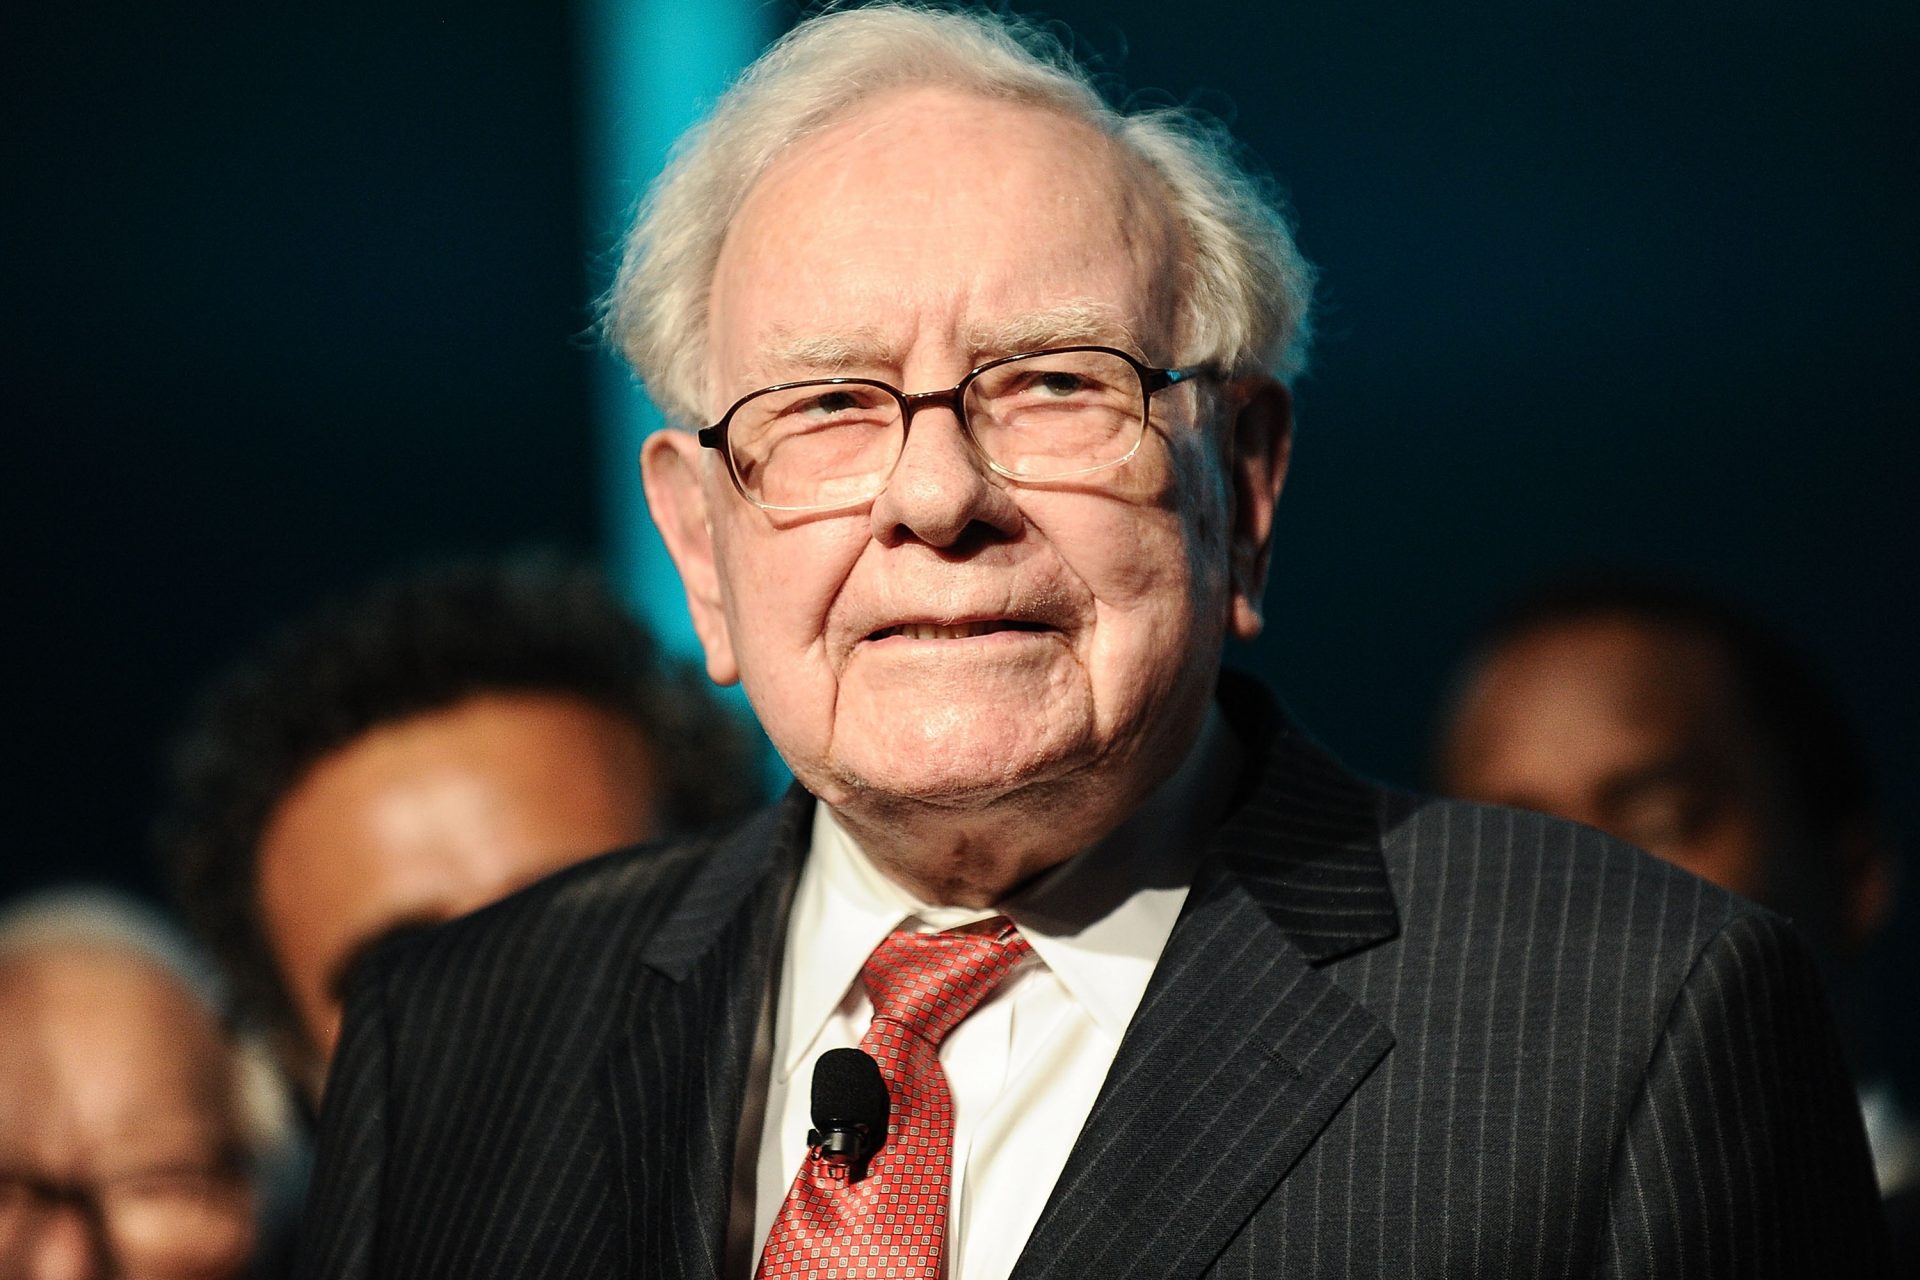 6. Warren Buffett